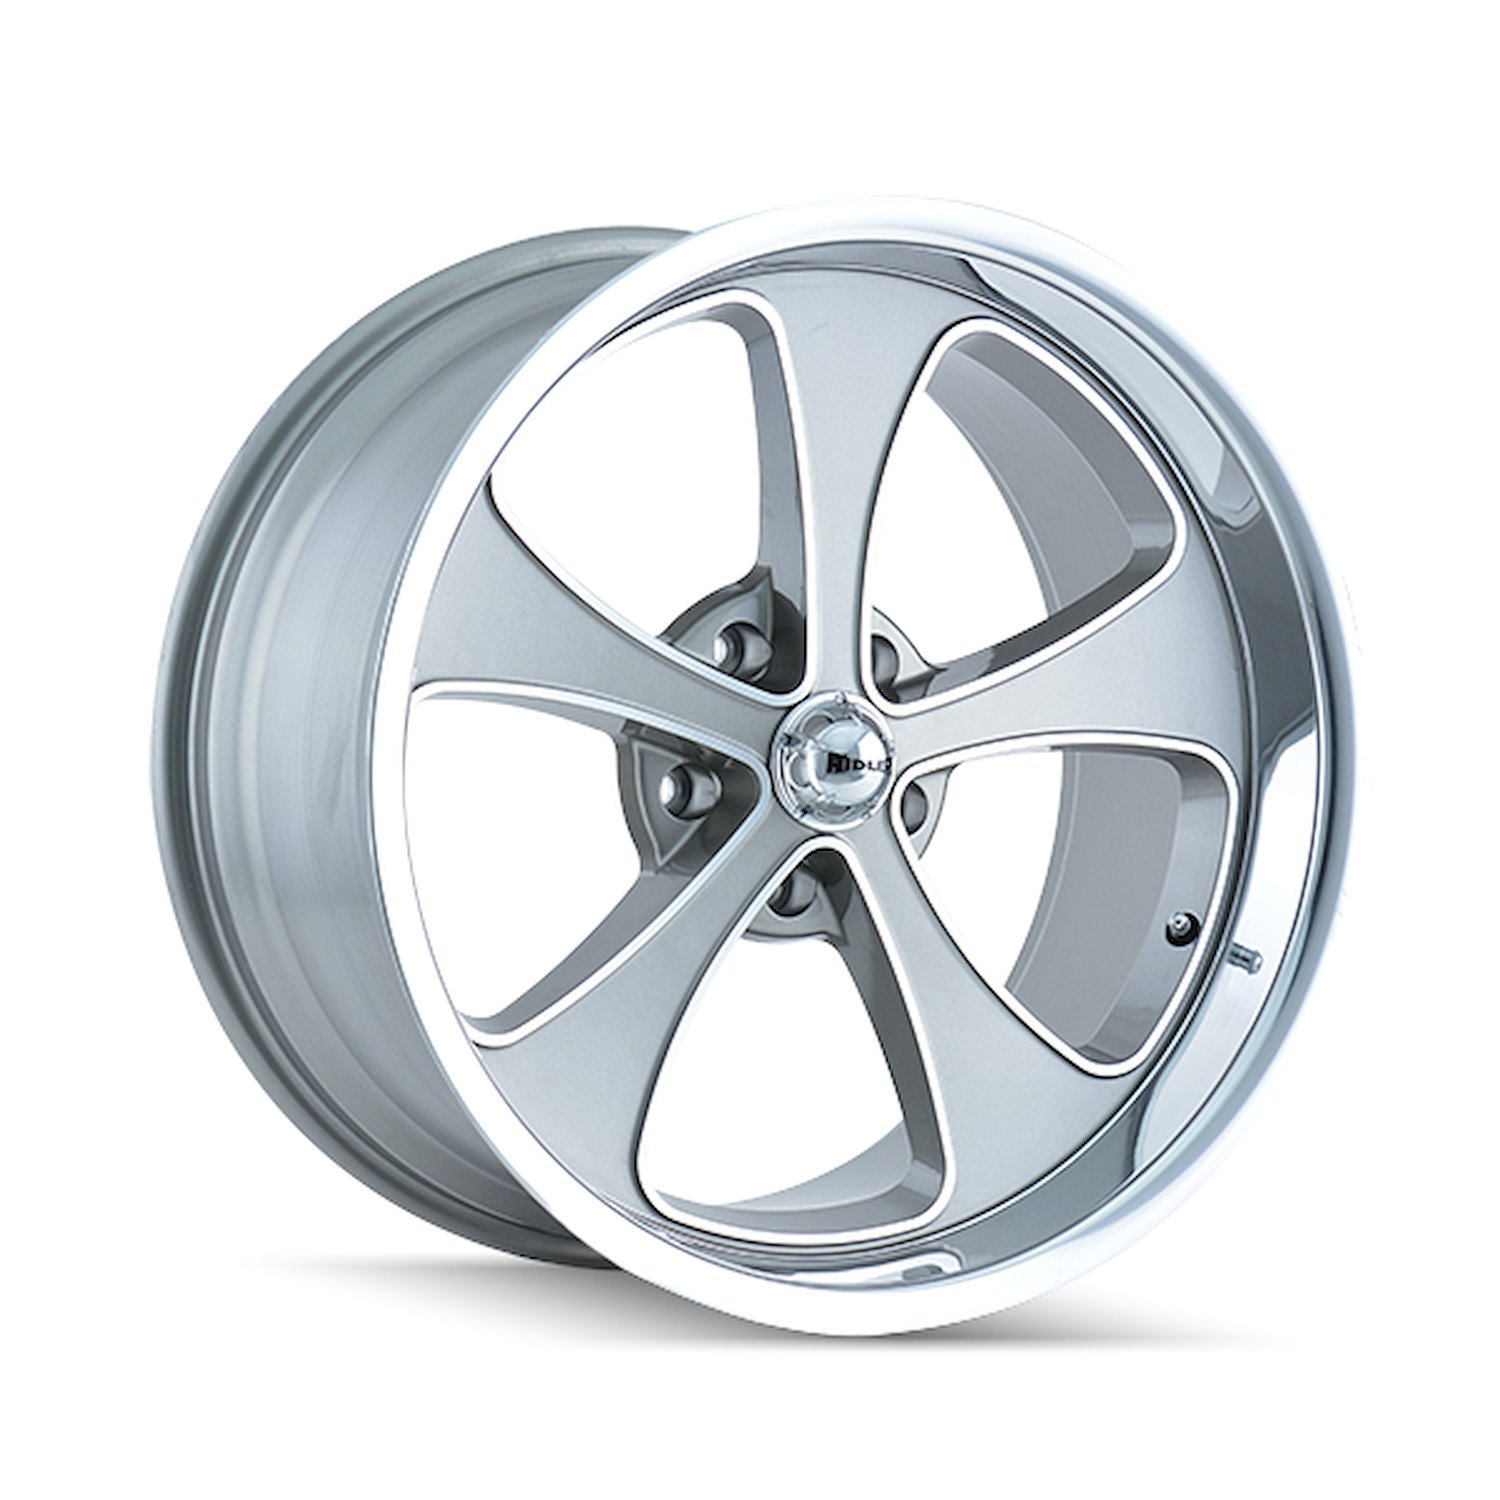 645-2173GP 645-Series Wheel [Size: 20" x 10"] Gloss Grey Machined/Polished Finish